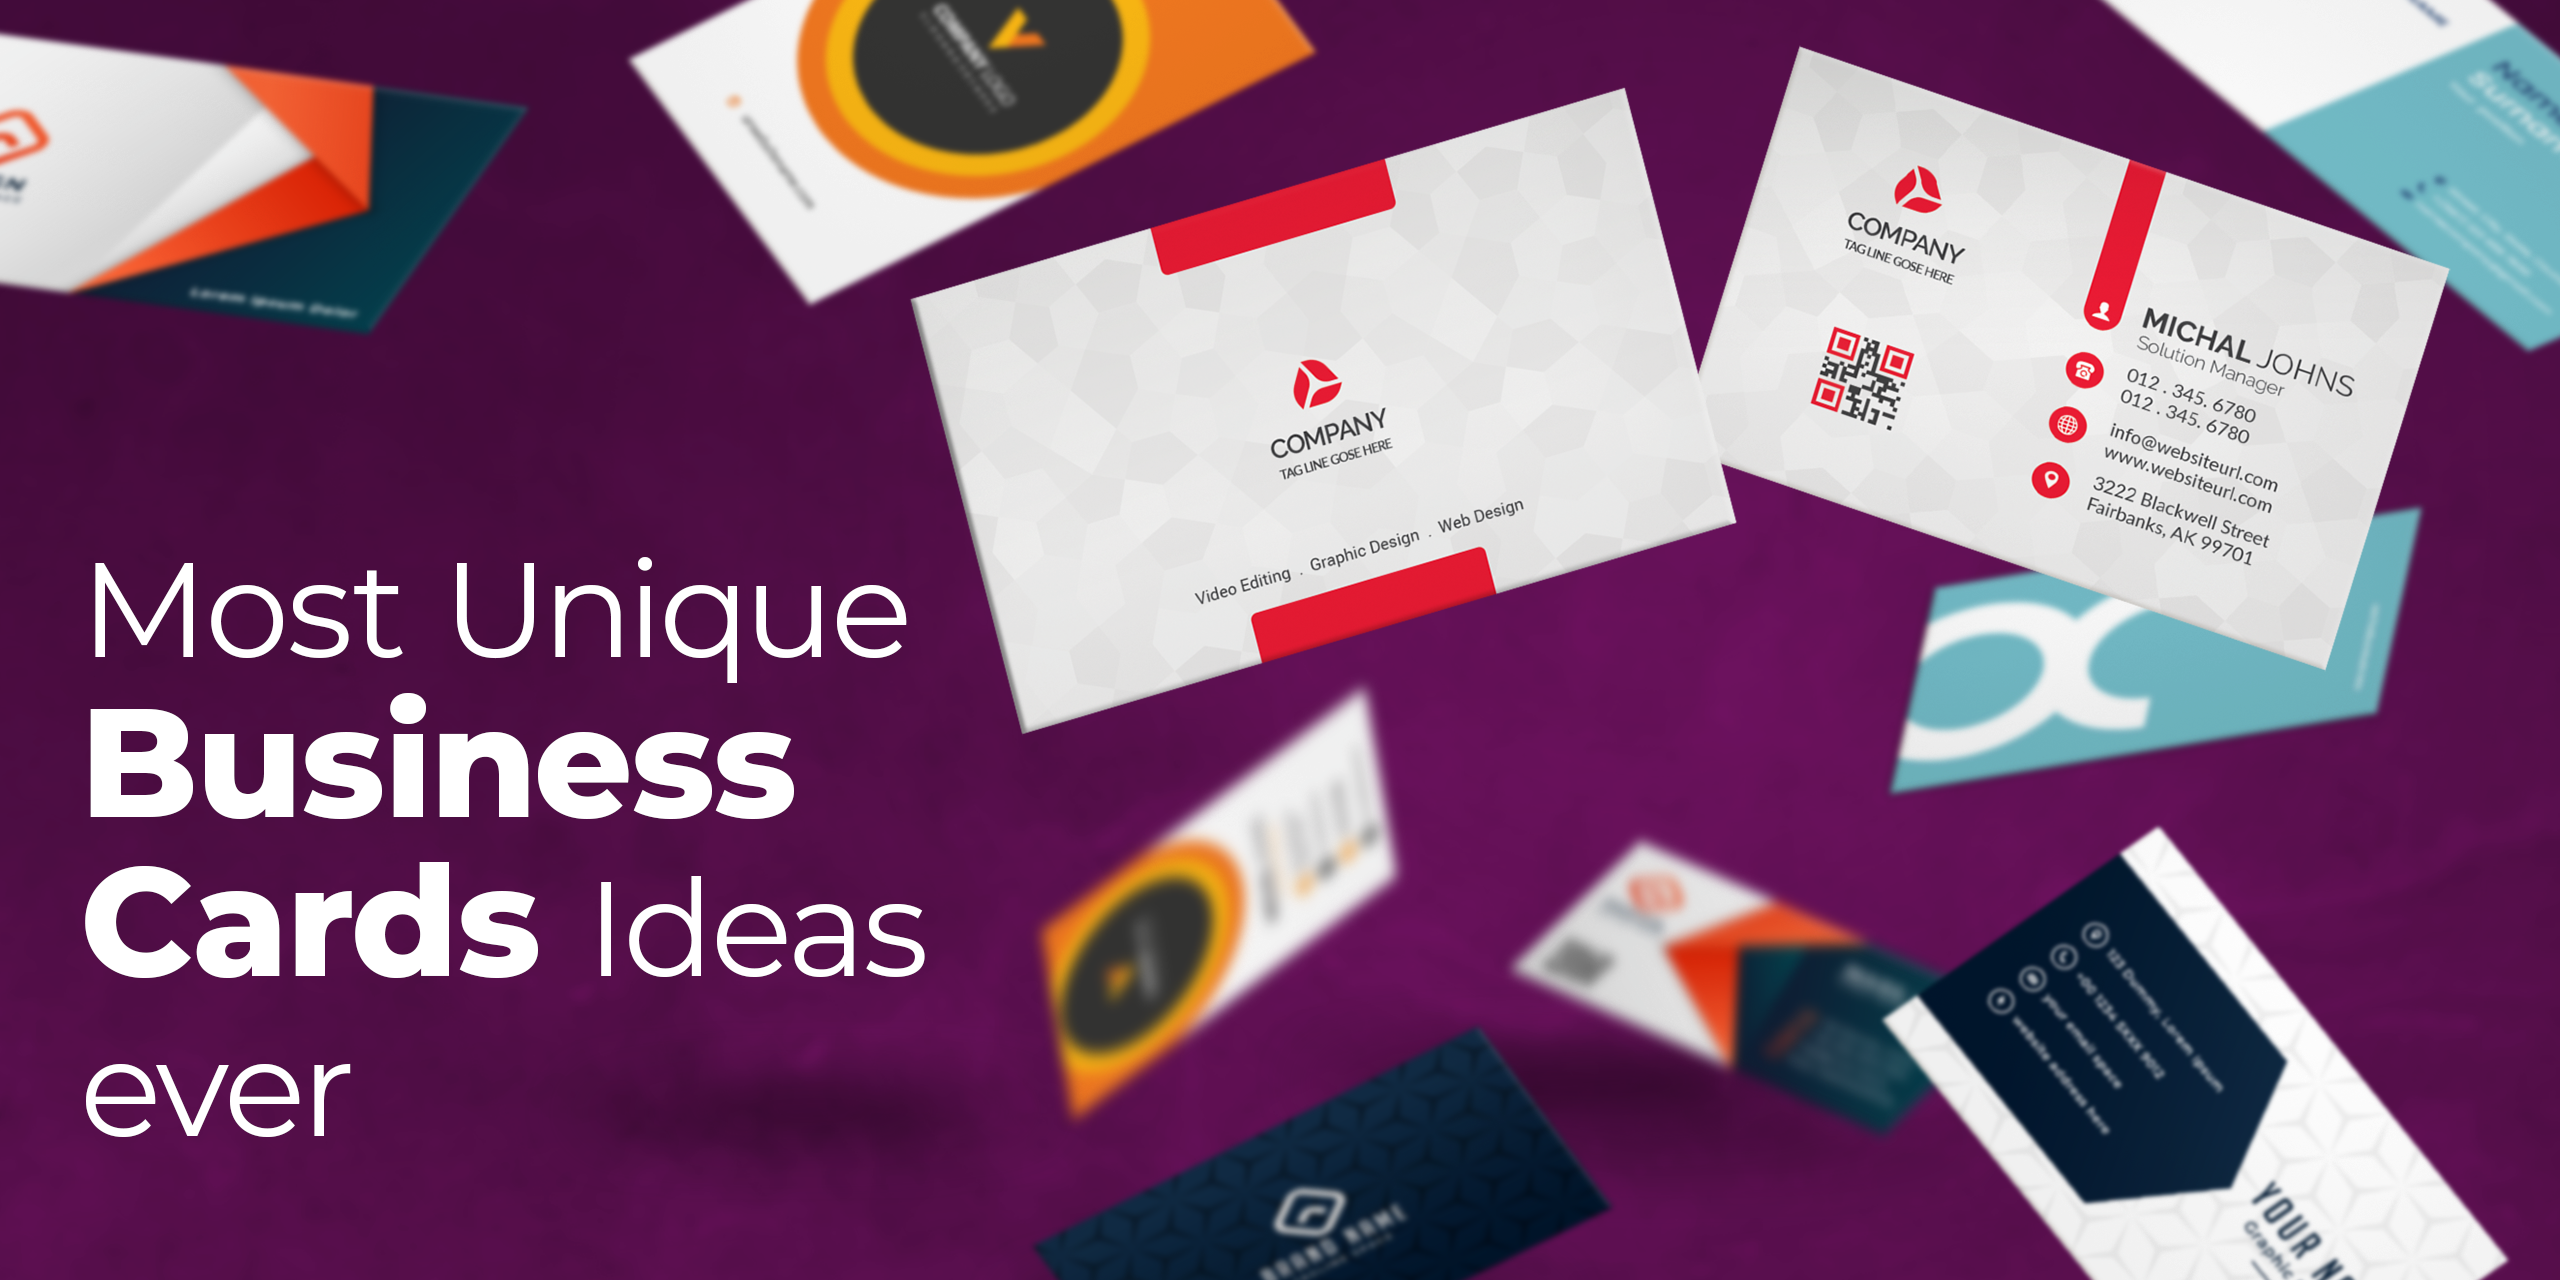 Most Unique Business Cards Ideas ever